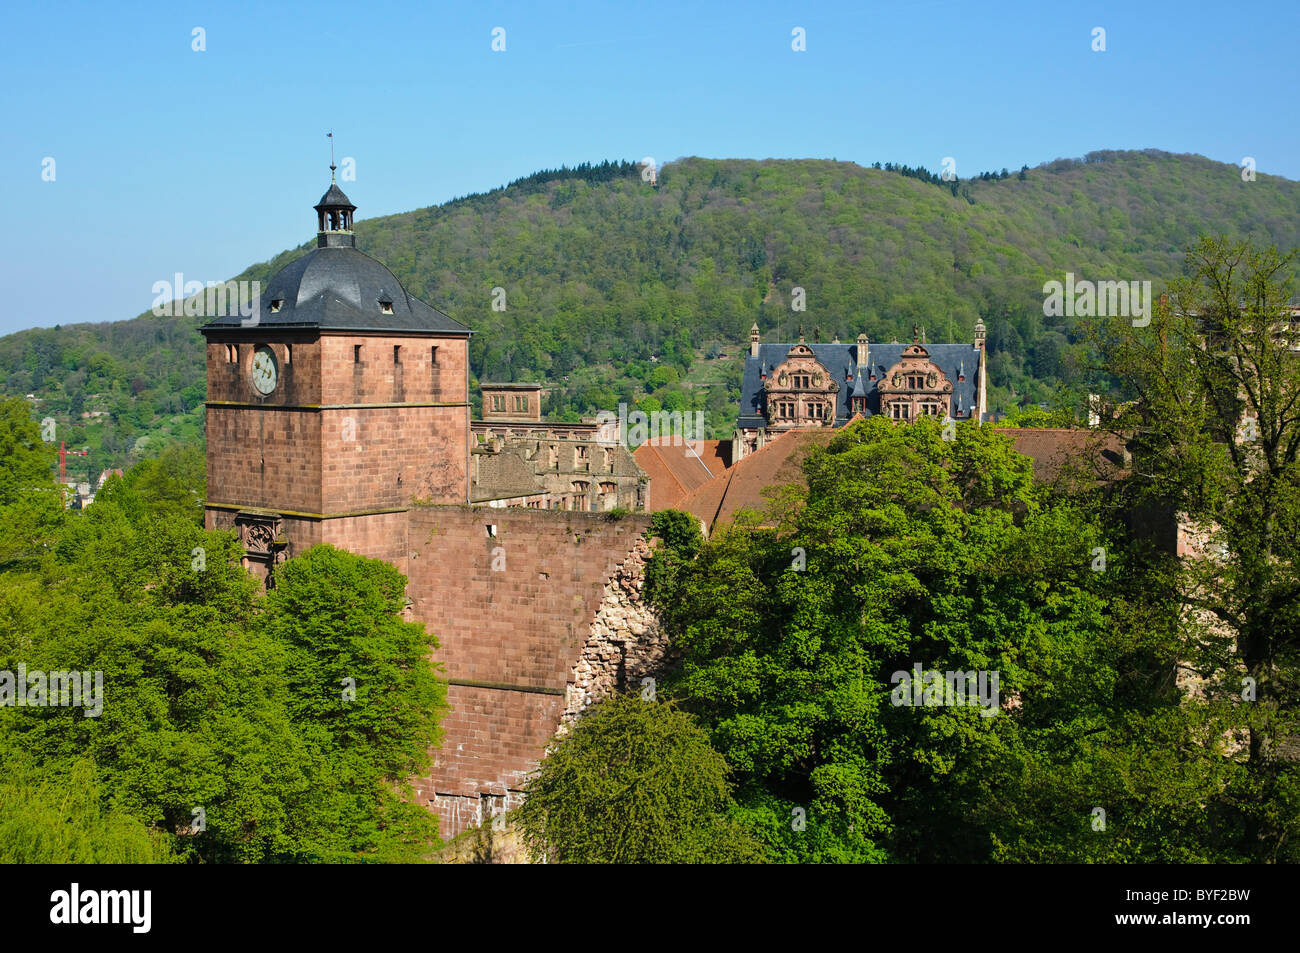 Heidelberg Stock Photo